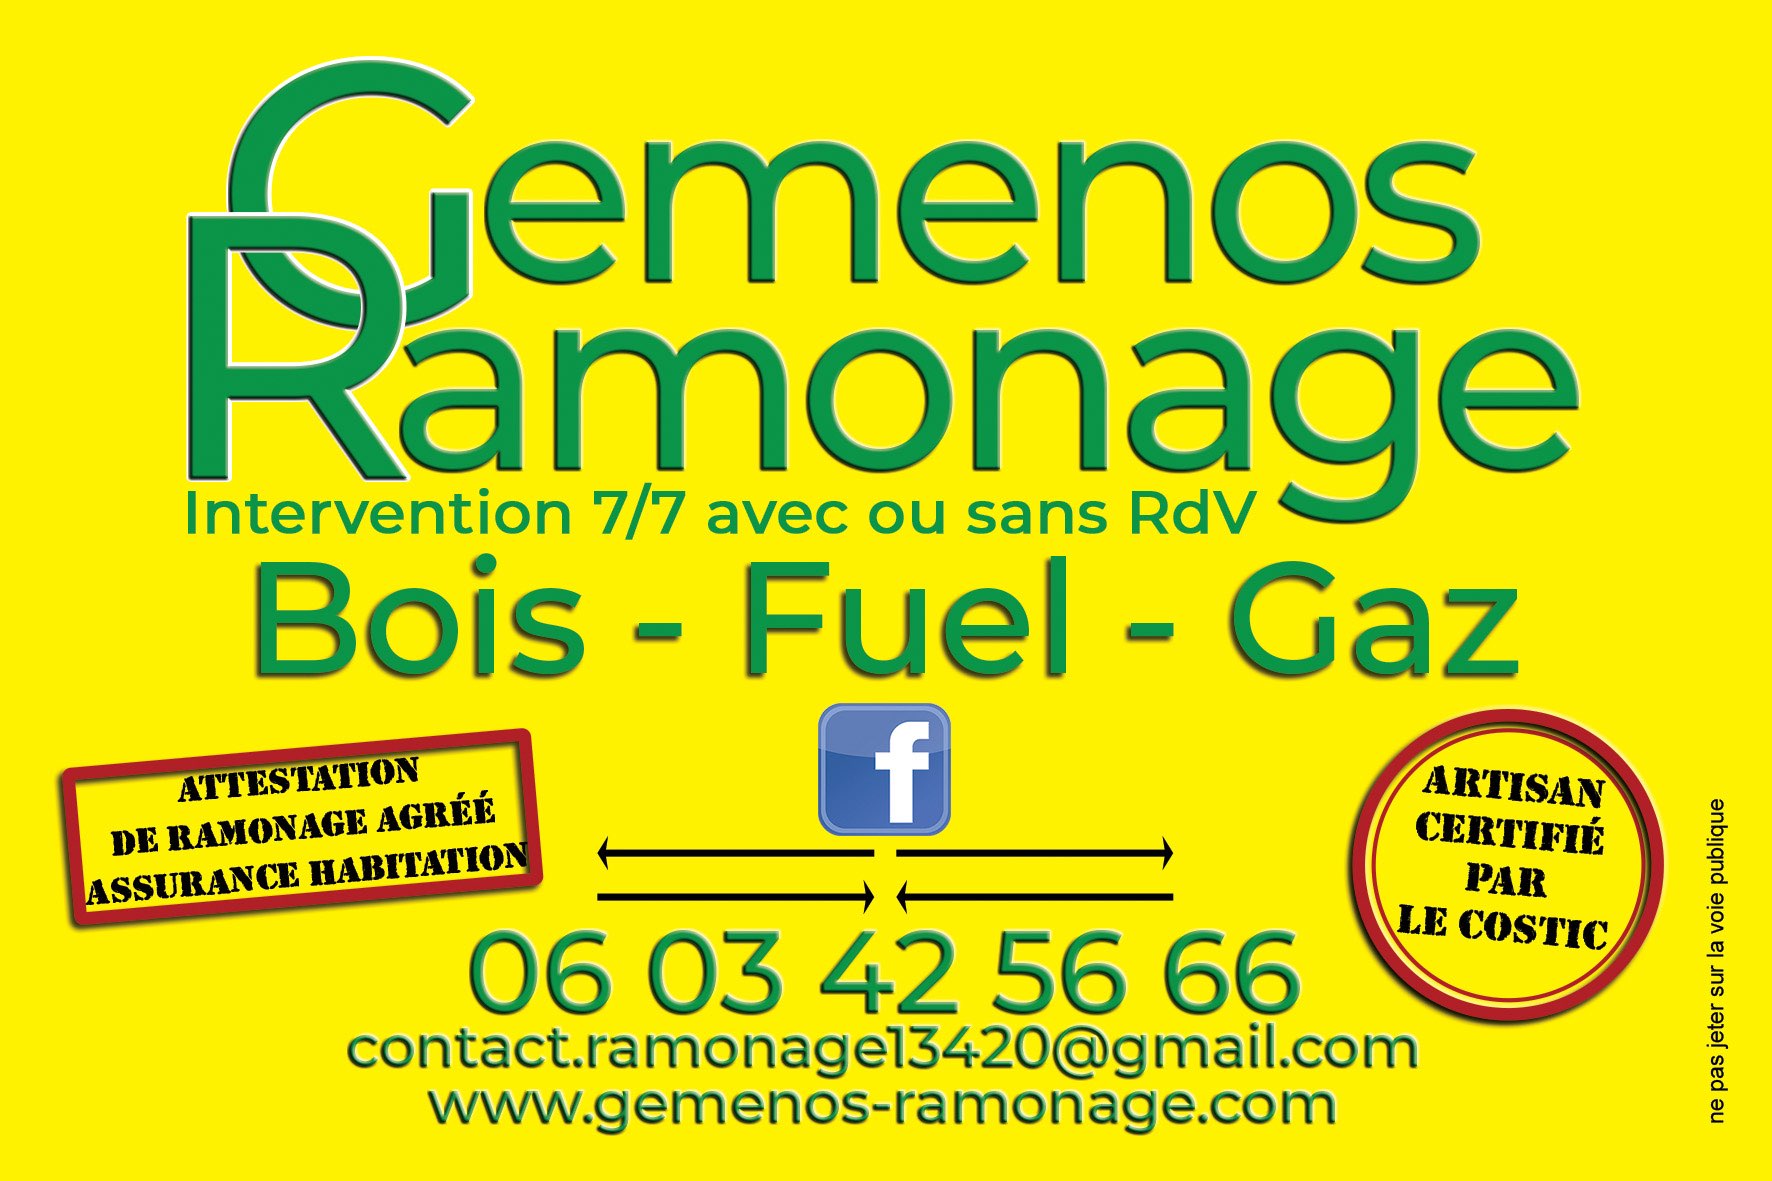 Gemenos Ramonage